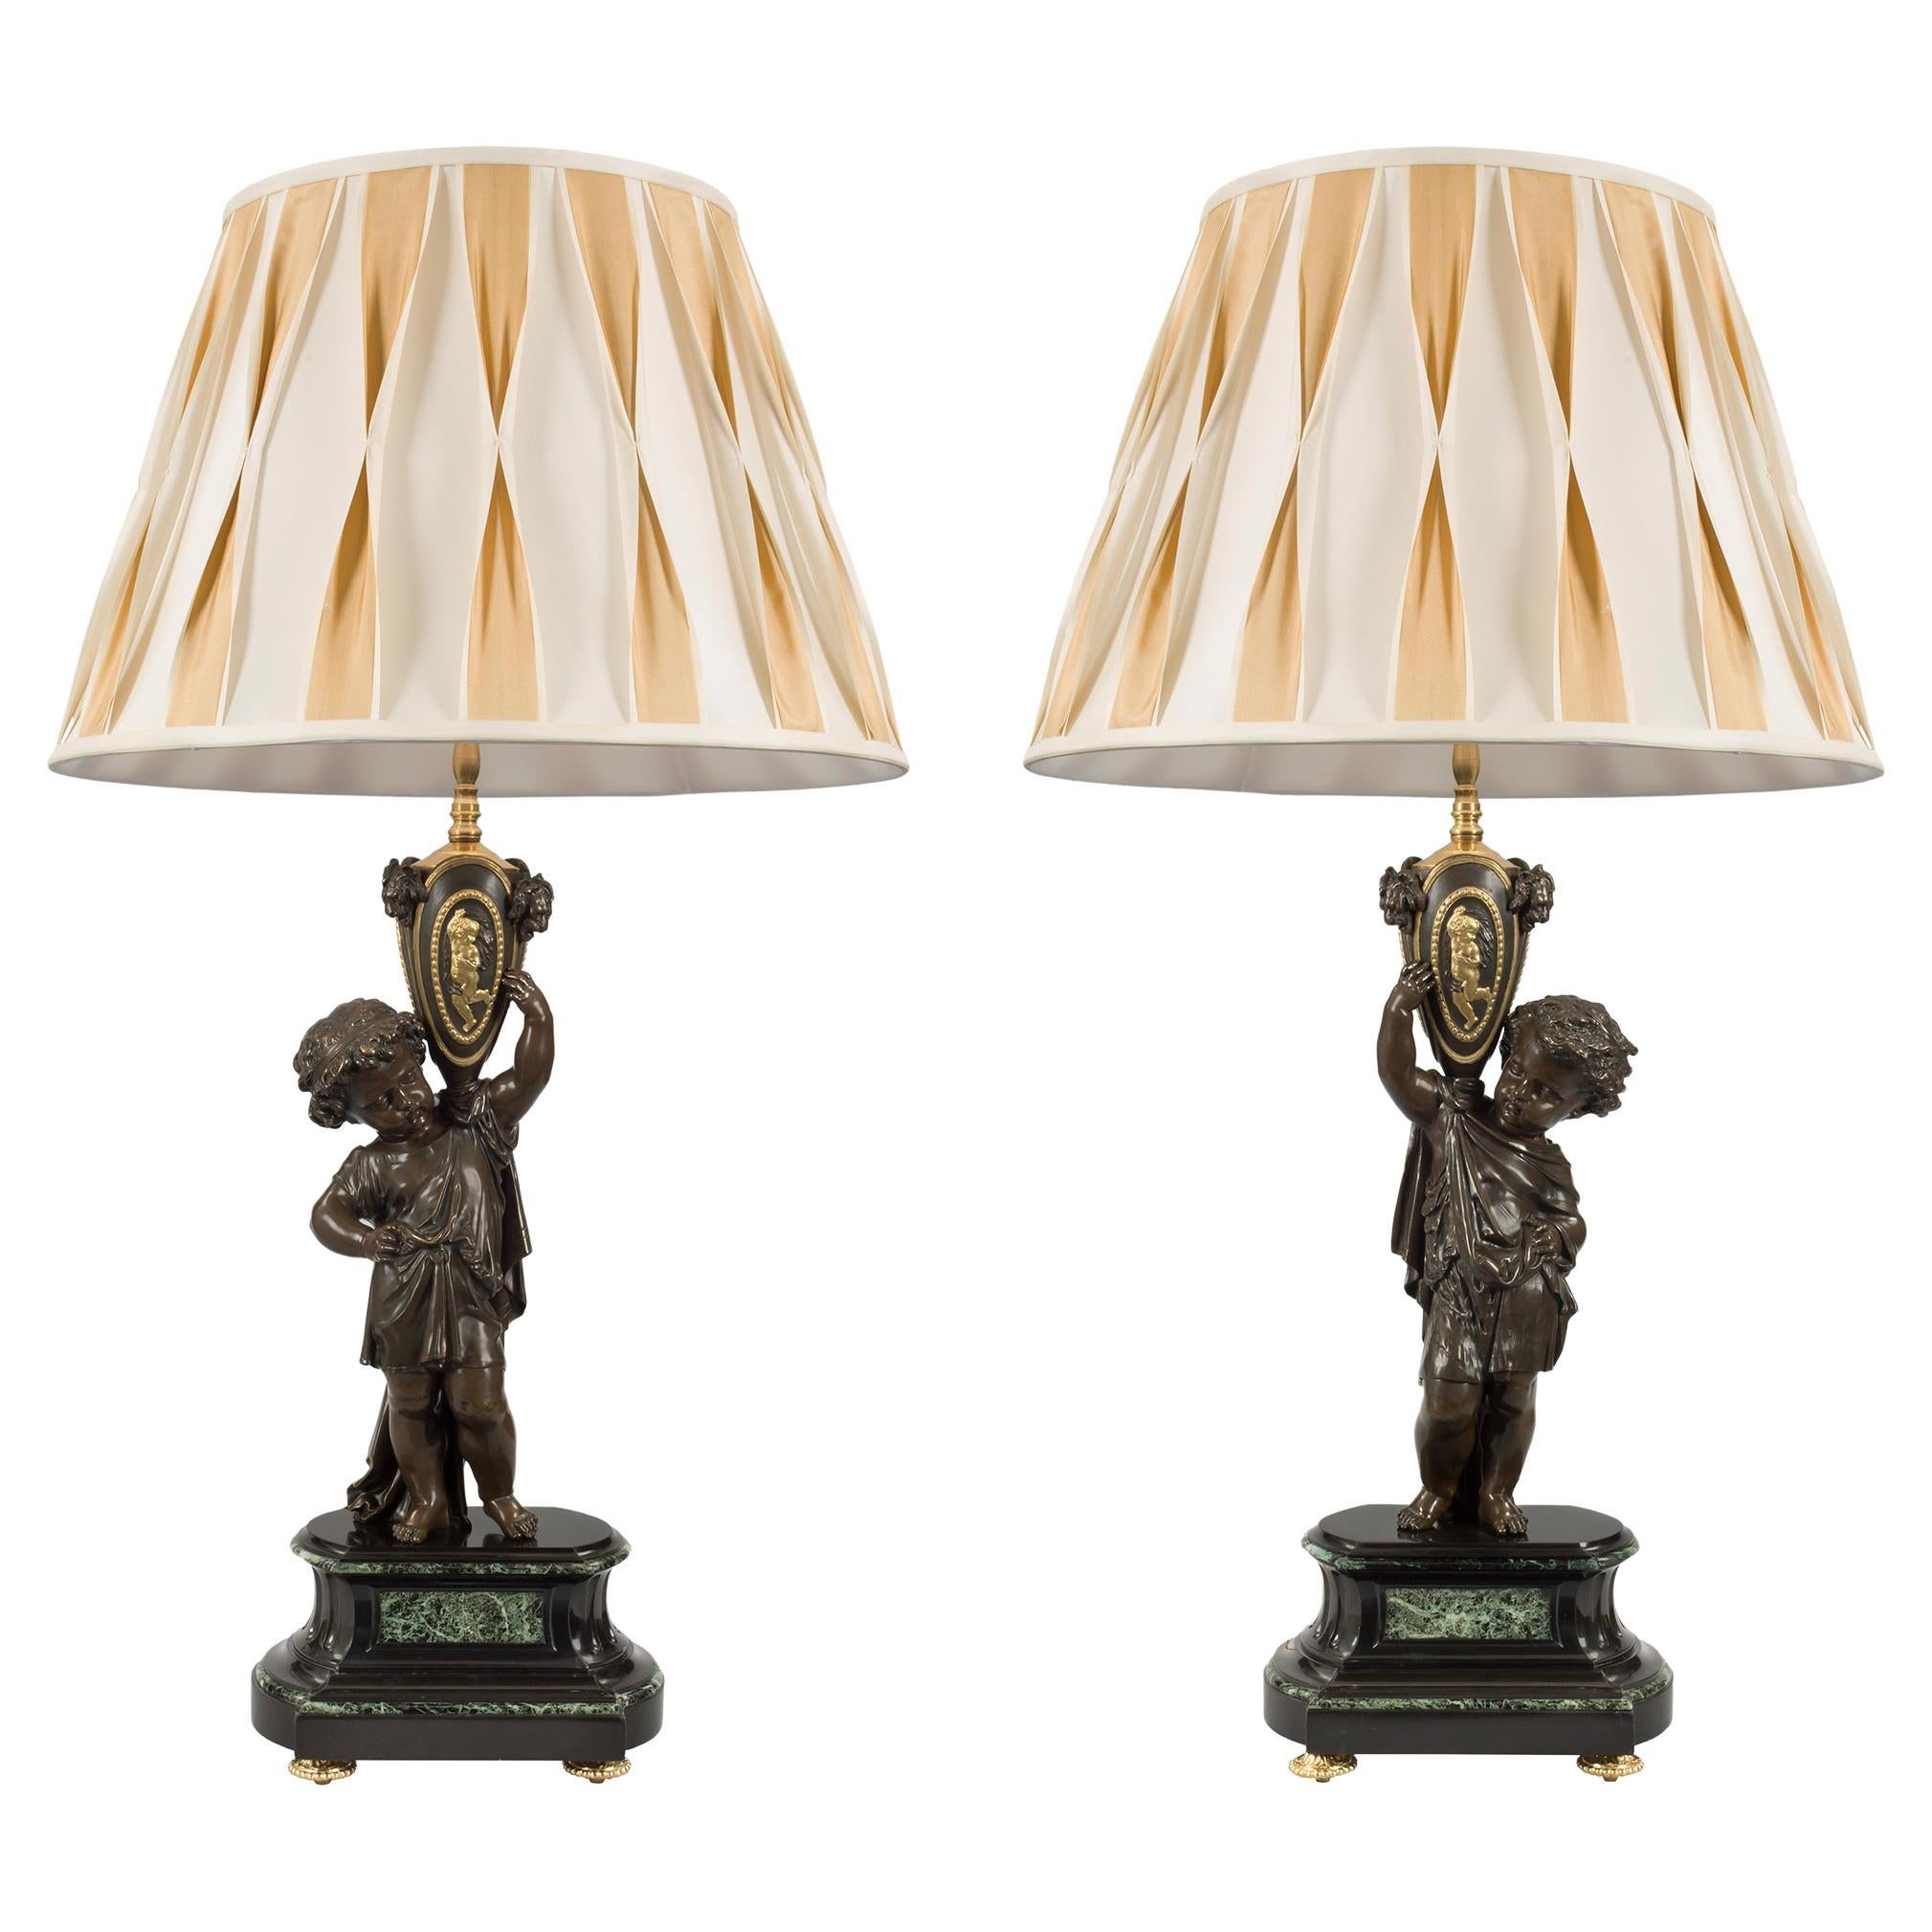 Paar französische Louis XVI-Lampen aus der St. Belle Époque-Periode des 19. Jahrhunderts